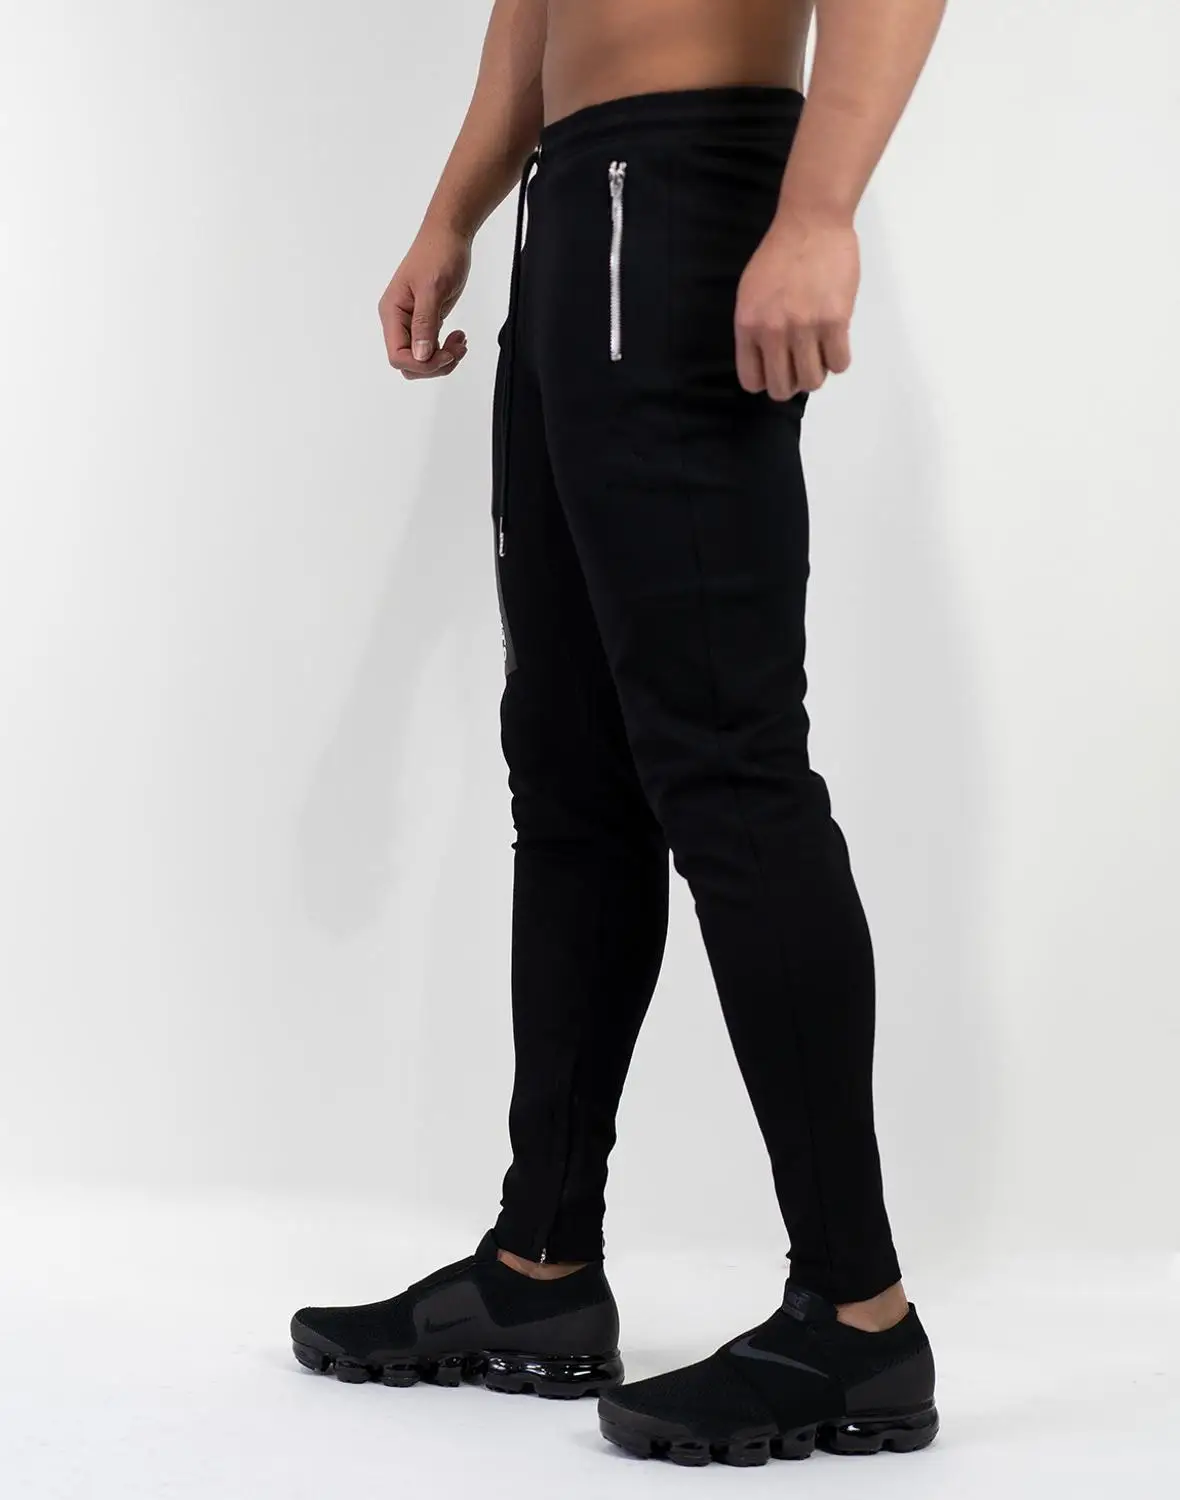 FRMARO новые высококачественные спортивные брюки для бега мужские дышащие Фитнес Бодибилдинг Спортзал Брюки Одежда для бега спортивные брюки мужские